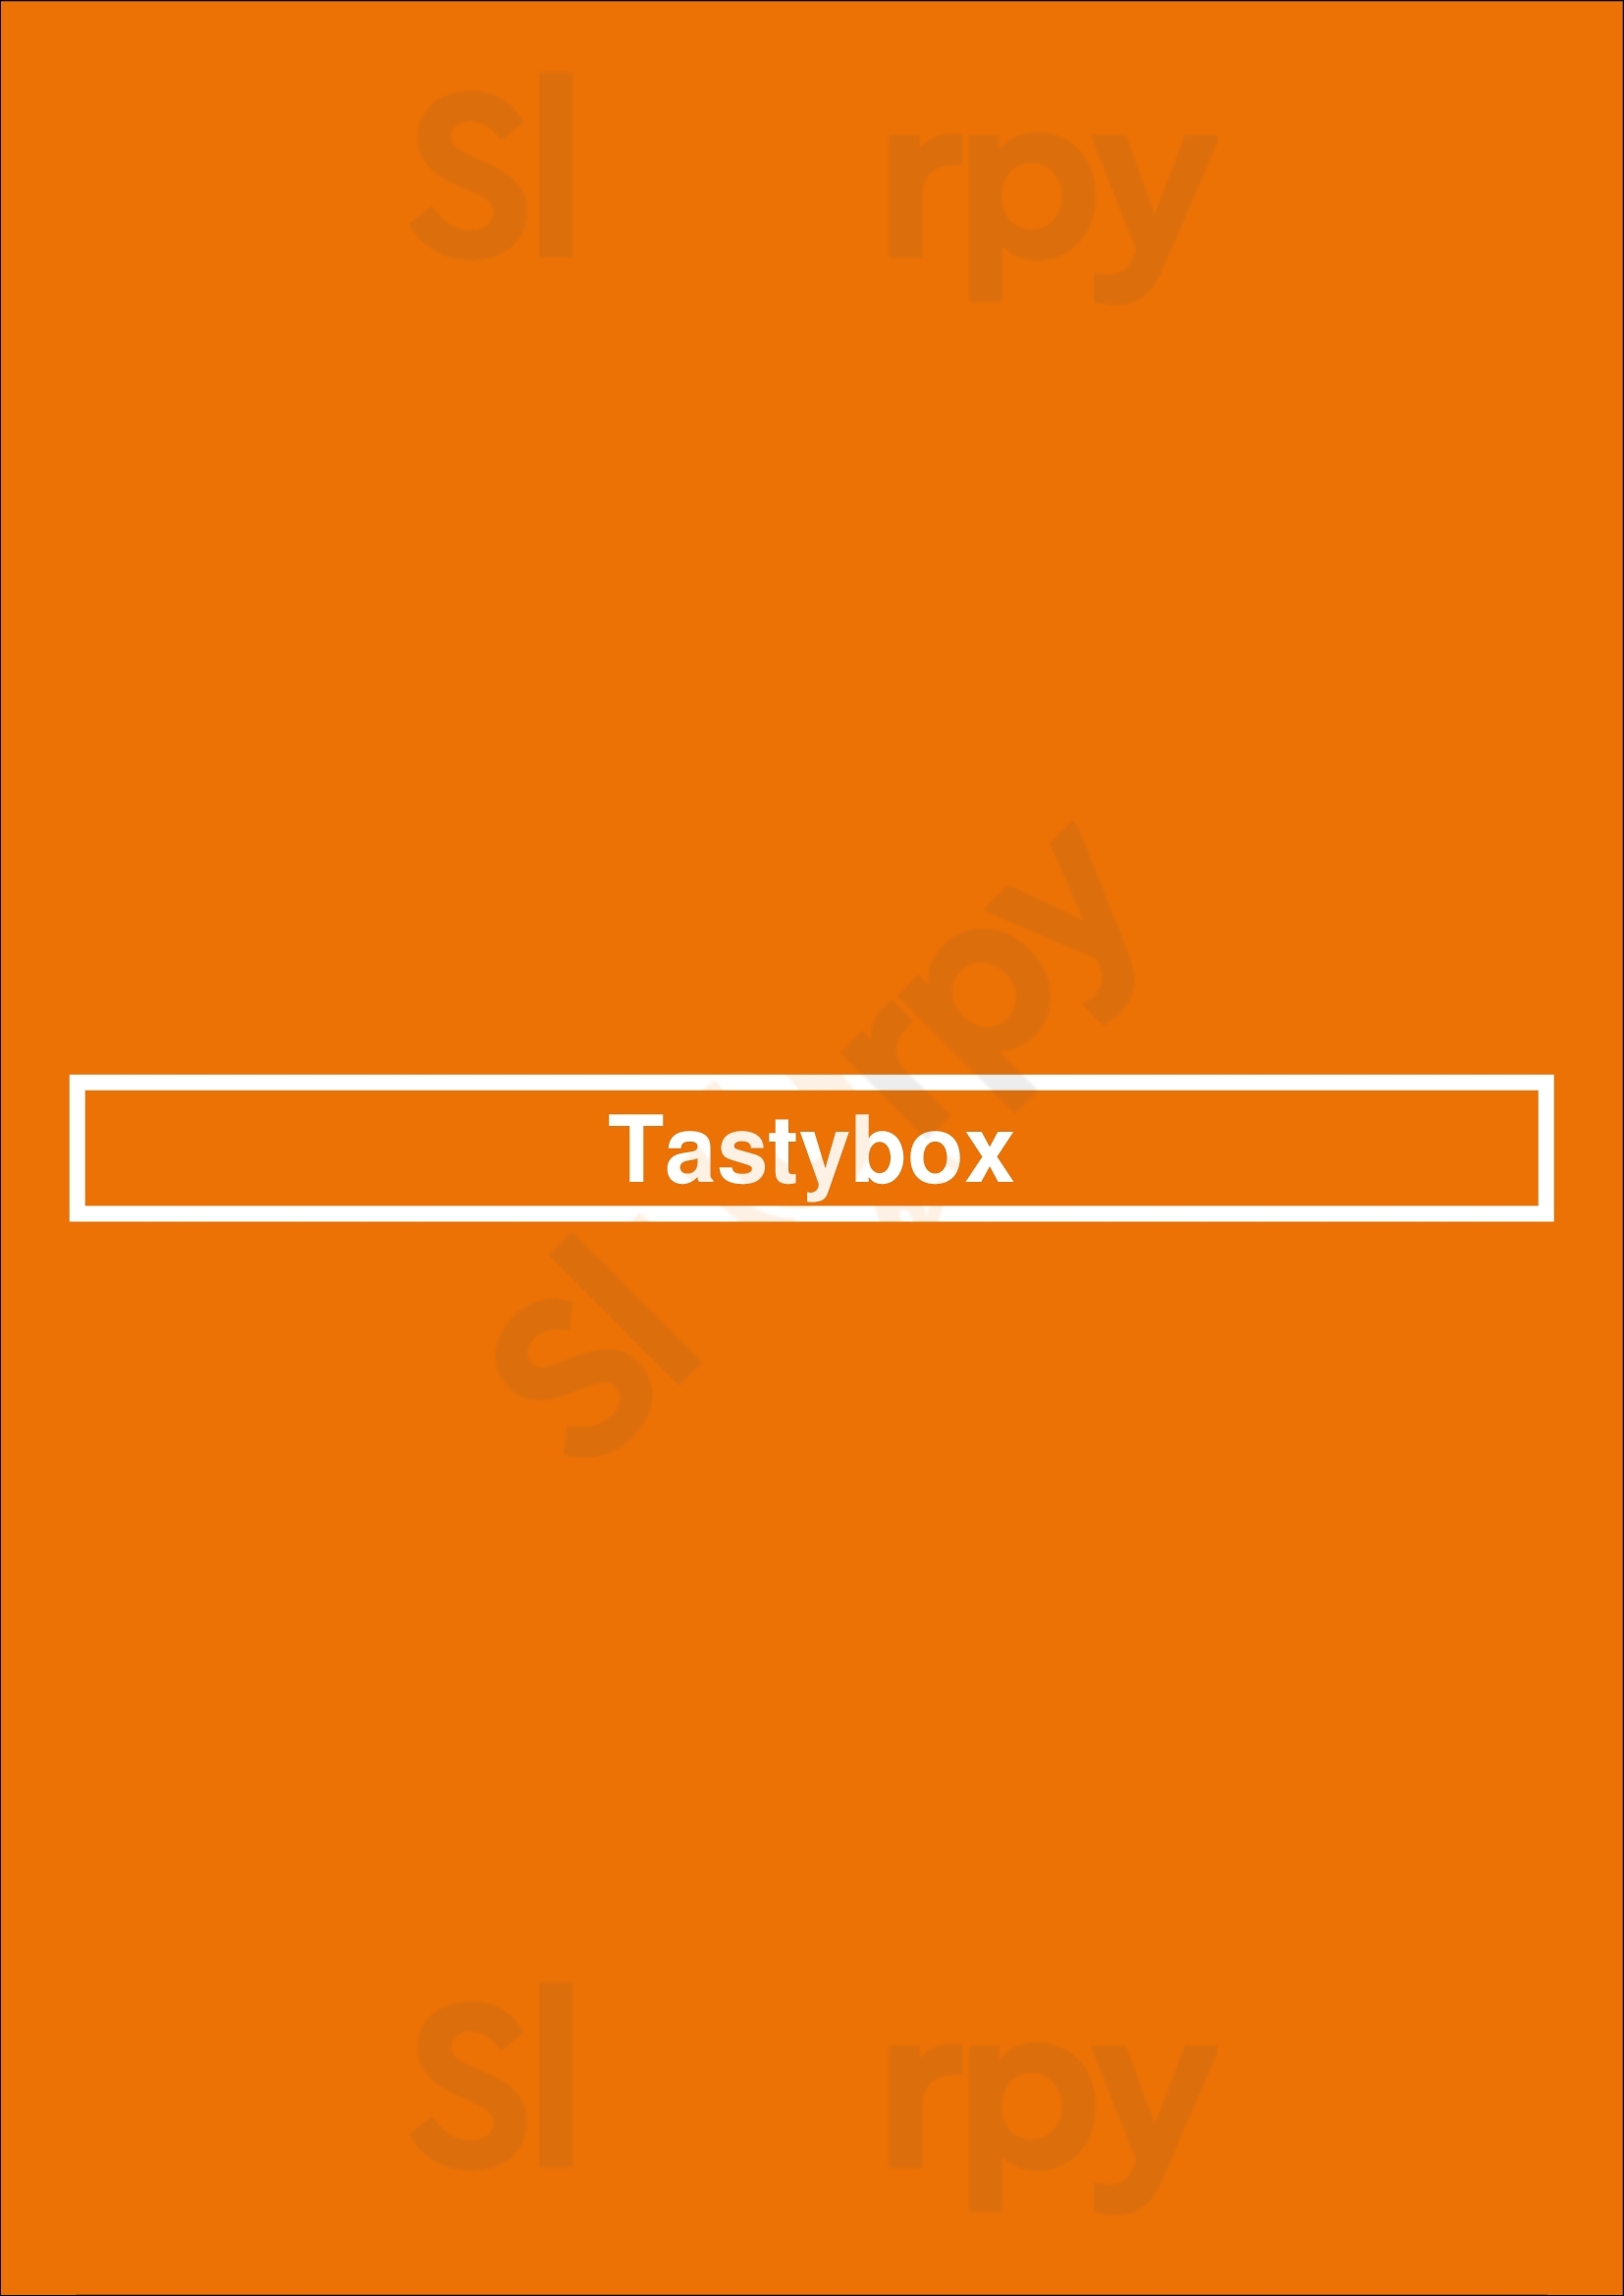 Tastybox Phoenix Menu - 1